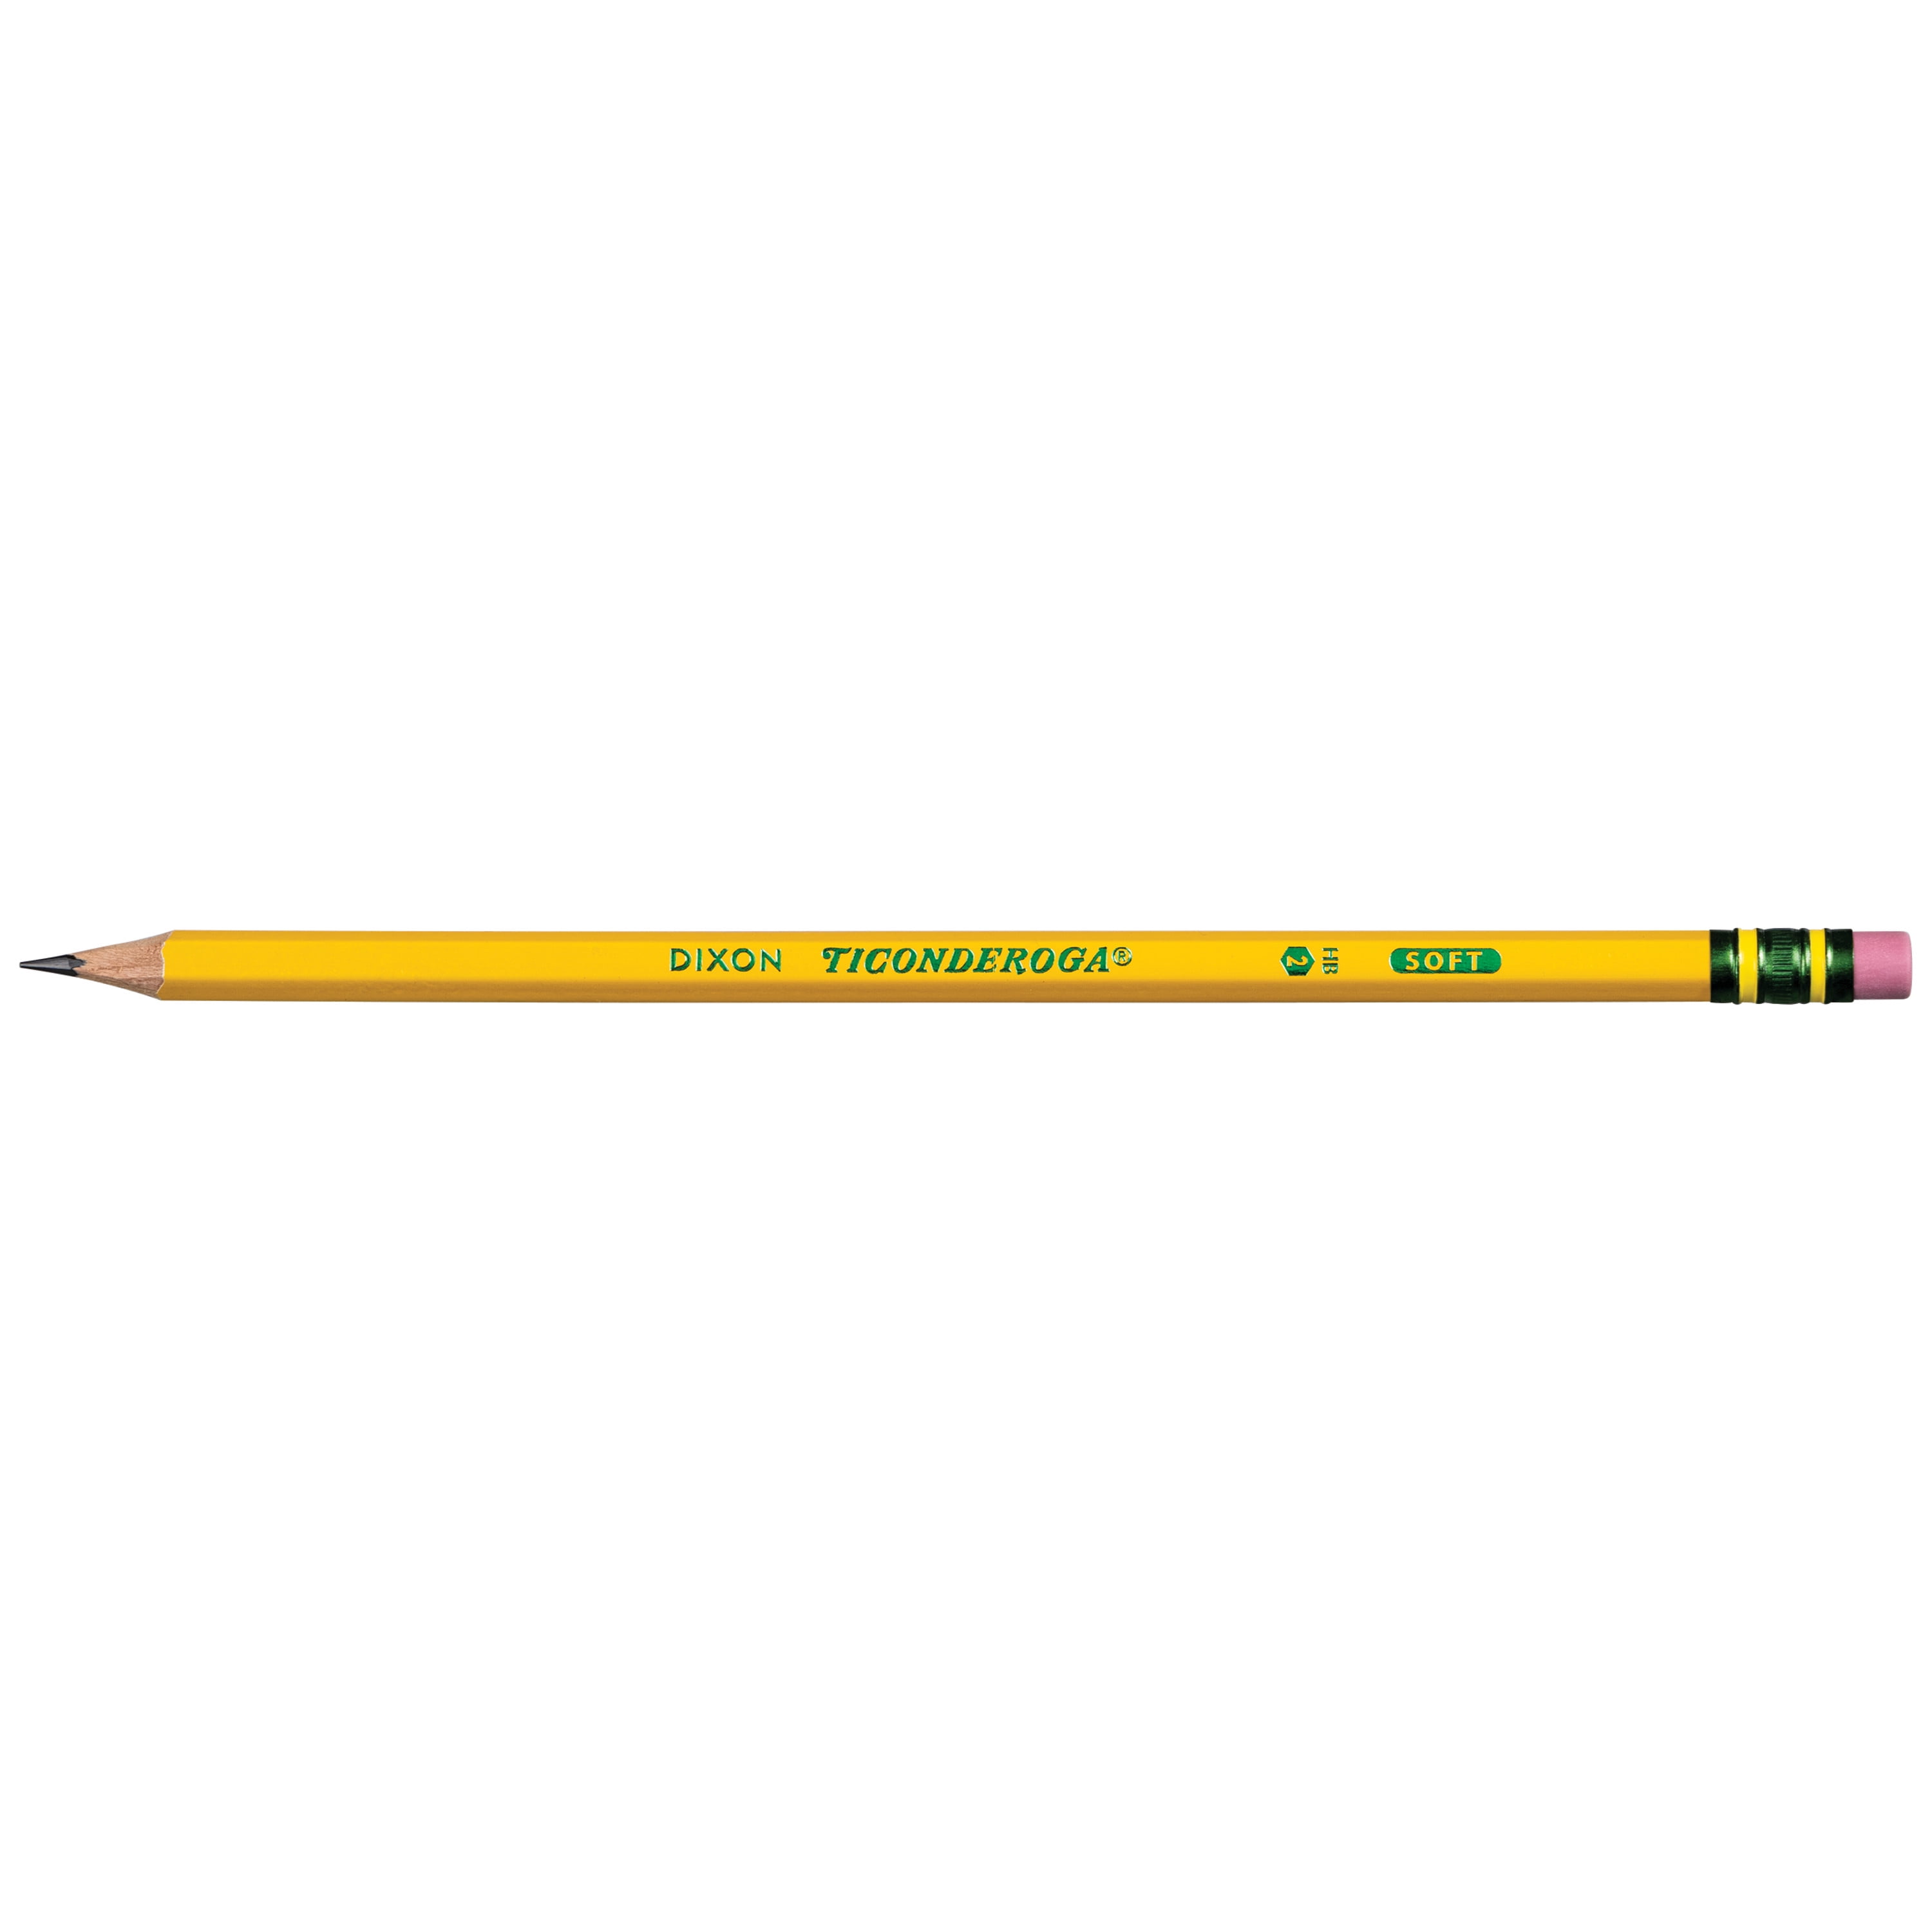 2 Pencils, #2 Ticonderoga Pencils in Stock - Uline